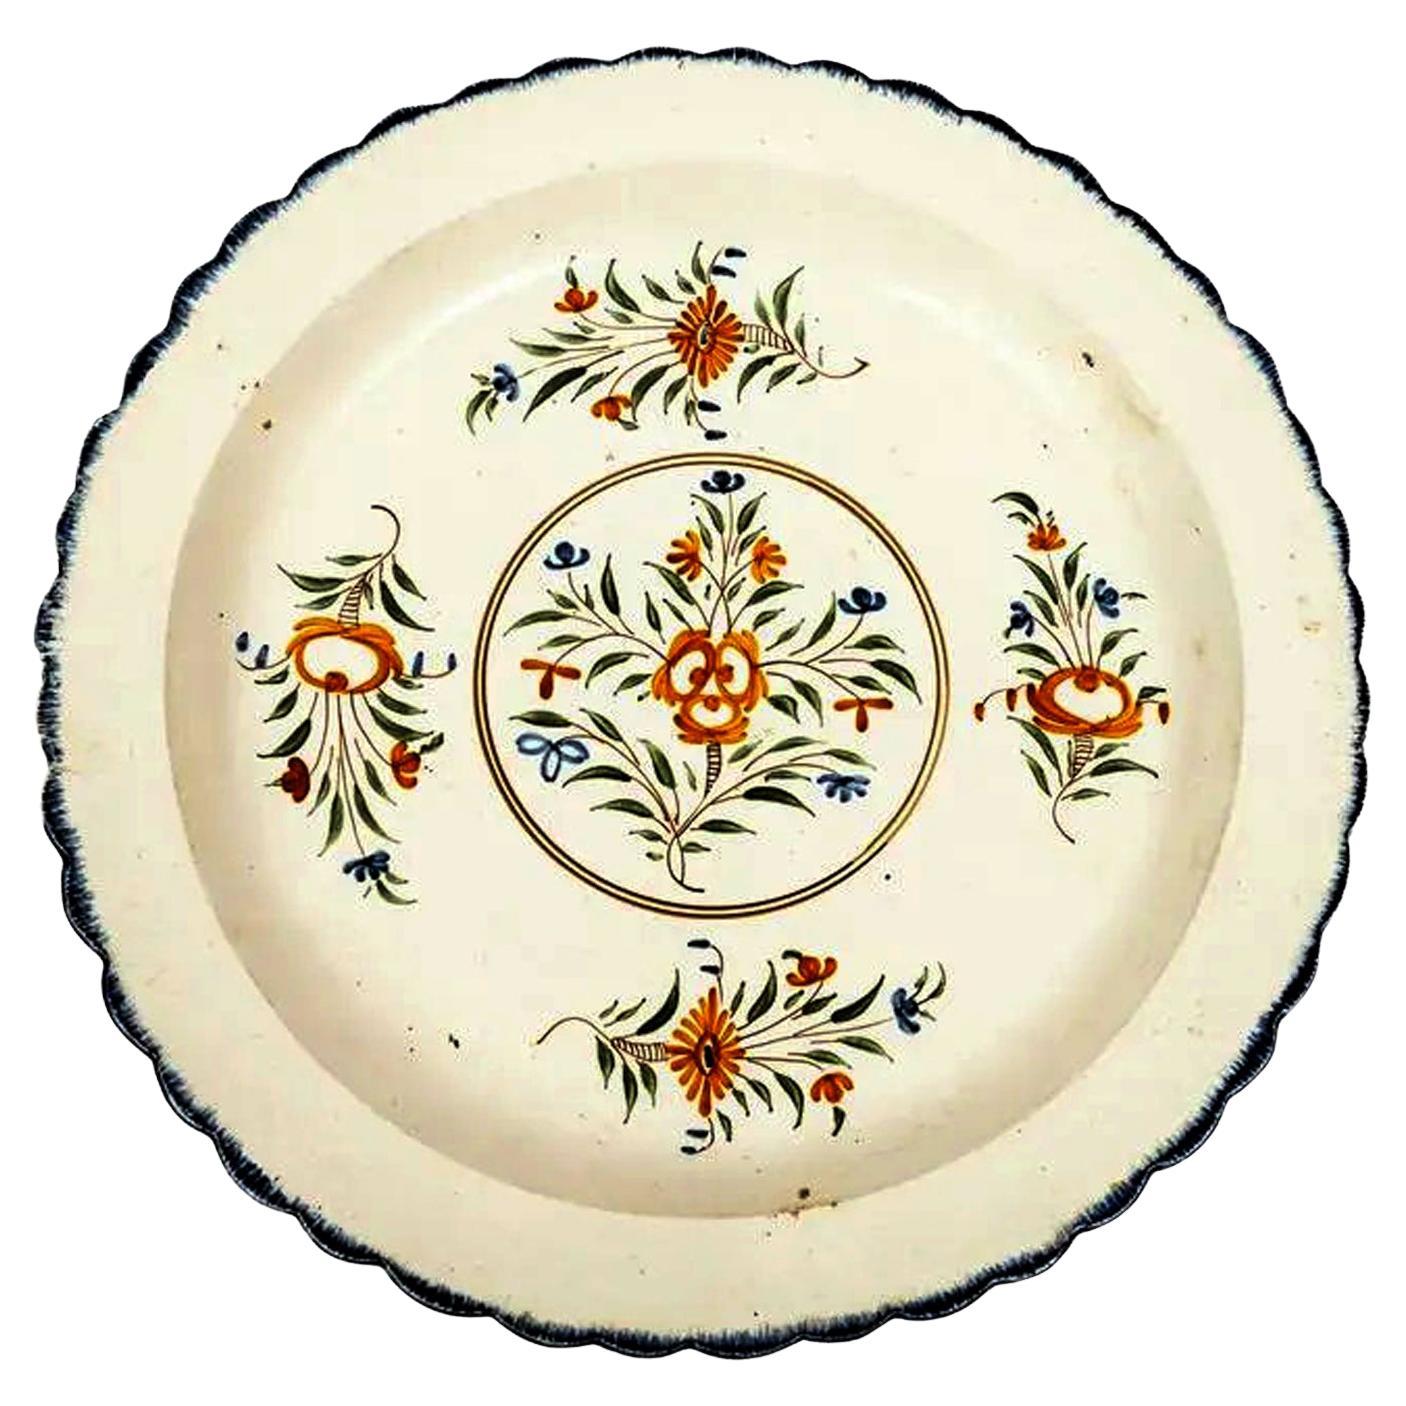 Grand plat en poterie crème avec décoration botanique polychrome